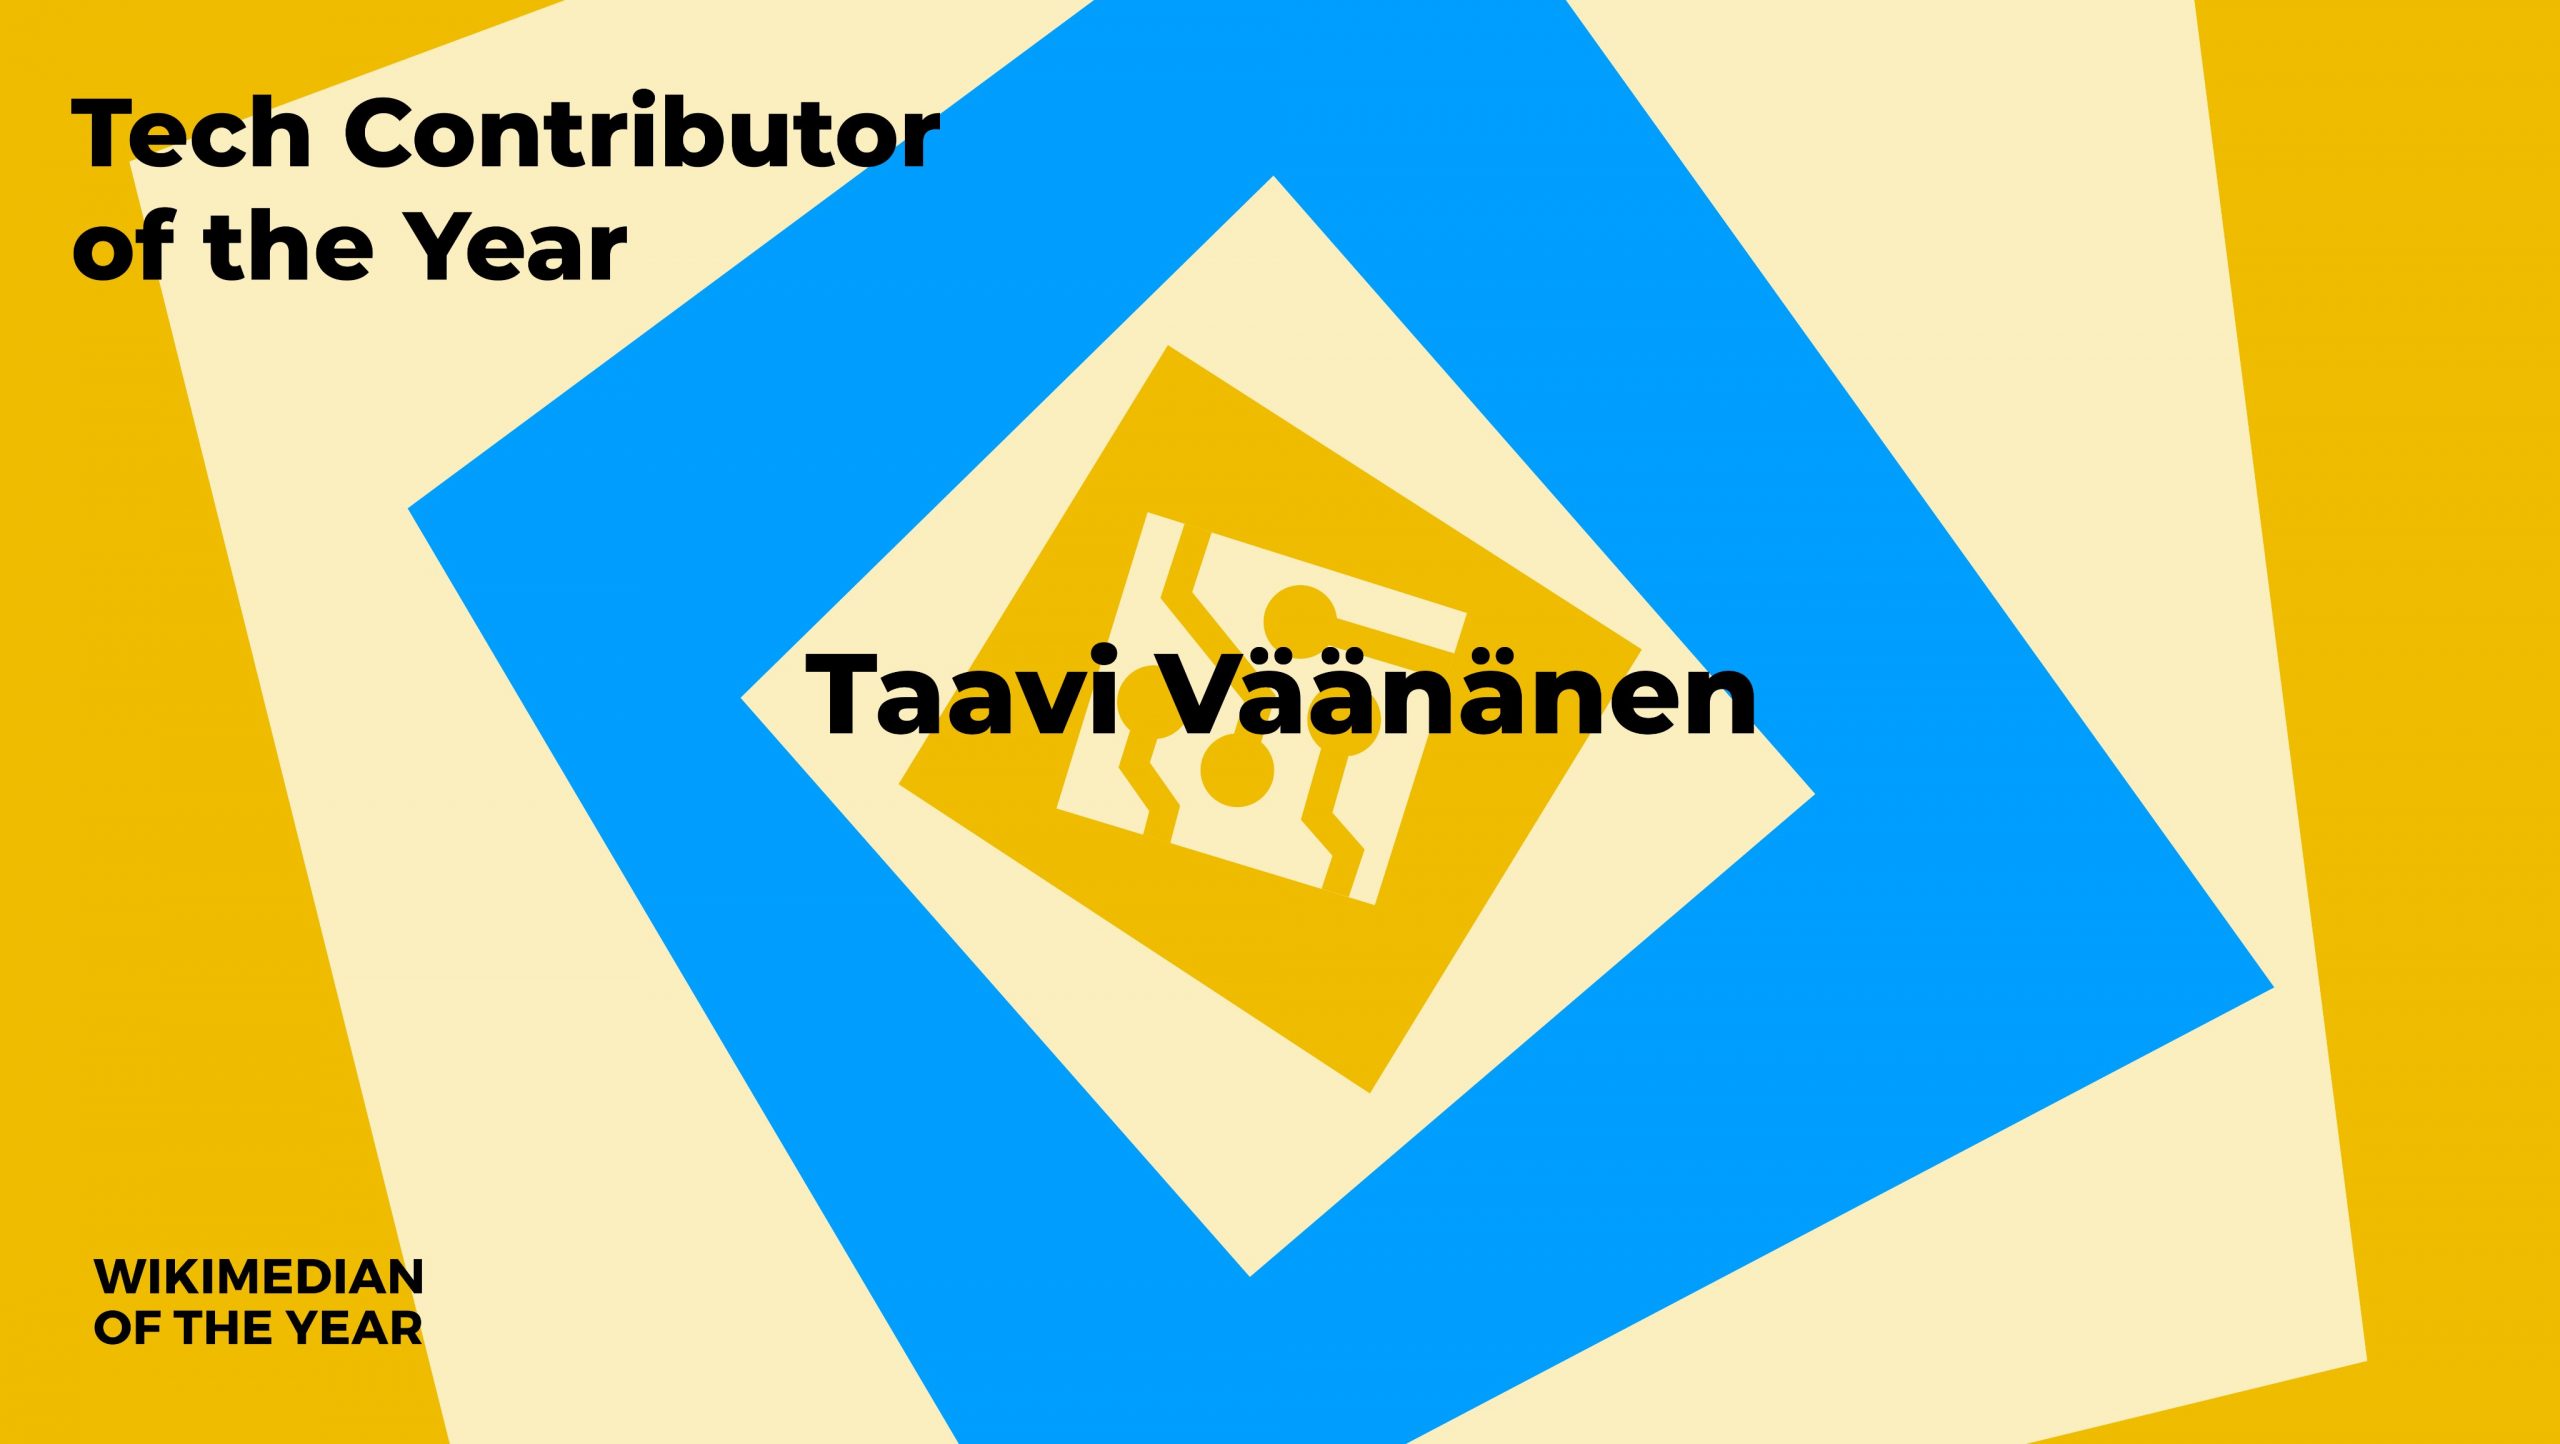 Wikimania Tech Contributer of the Year 2022 Taavi Väänänen